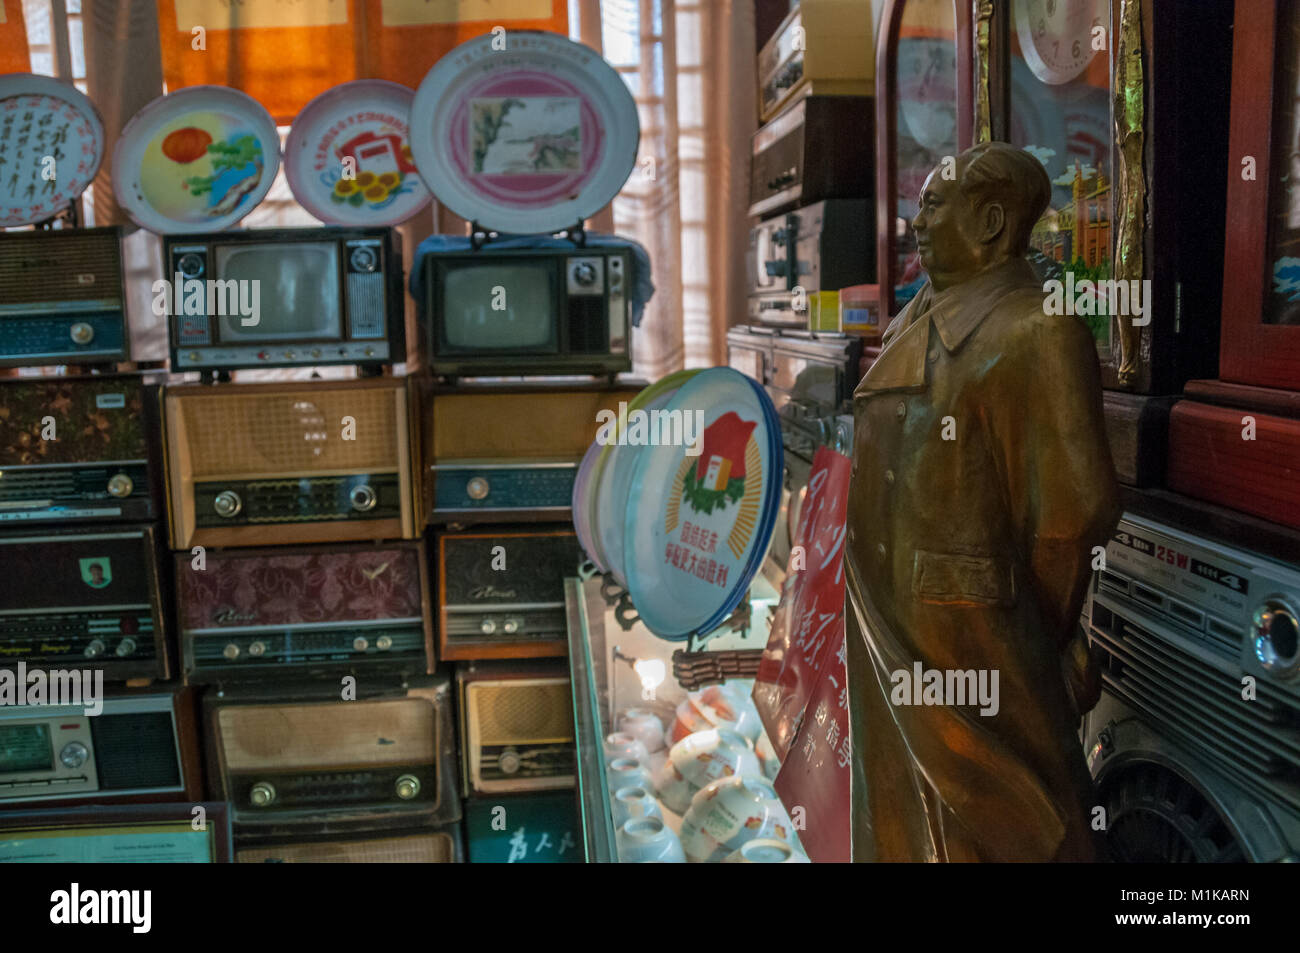 Una statua del presidente Mao con una raccolta dei primi apparecchi radio, televisori e altri articoli a partire già dai primi anni della Cina comunista. Parte di Jiangu Wu Foto Stock